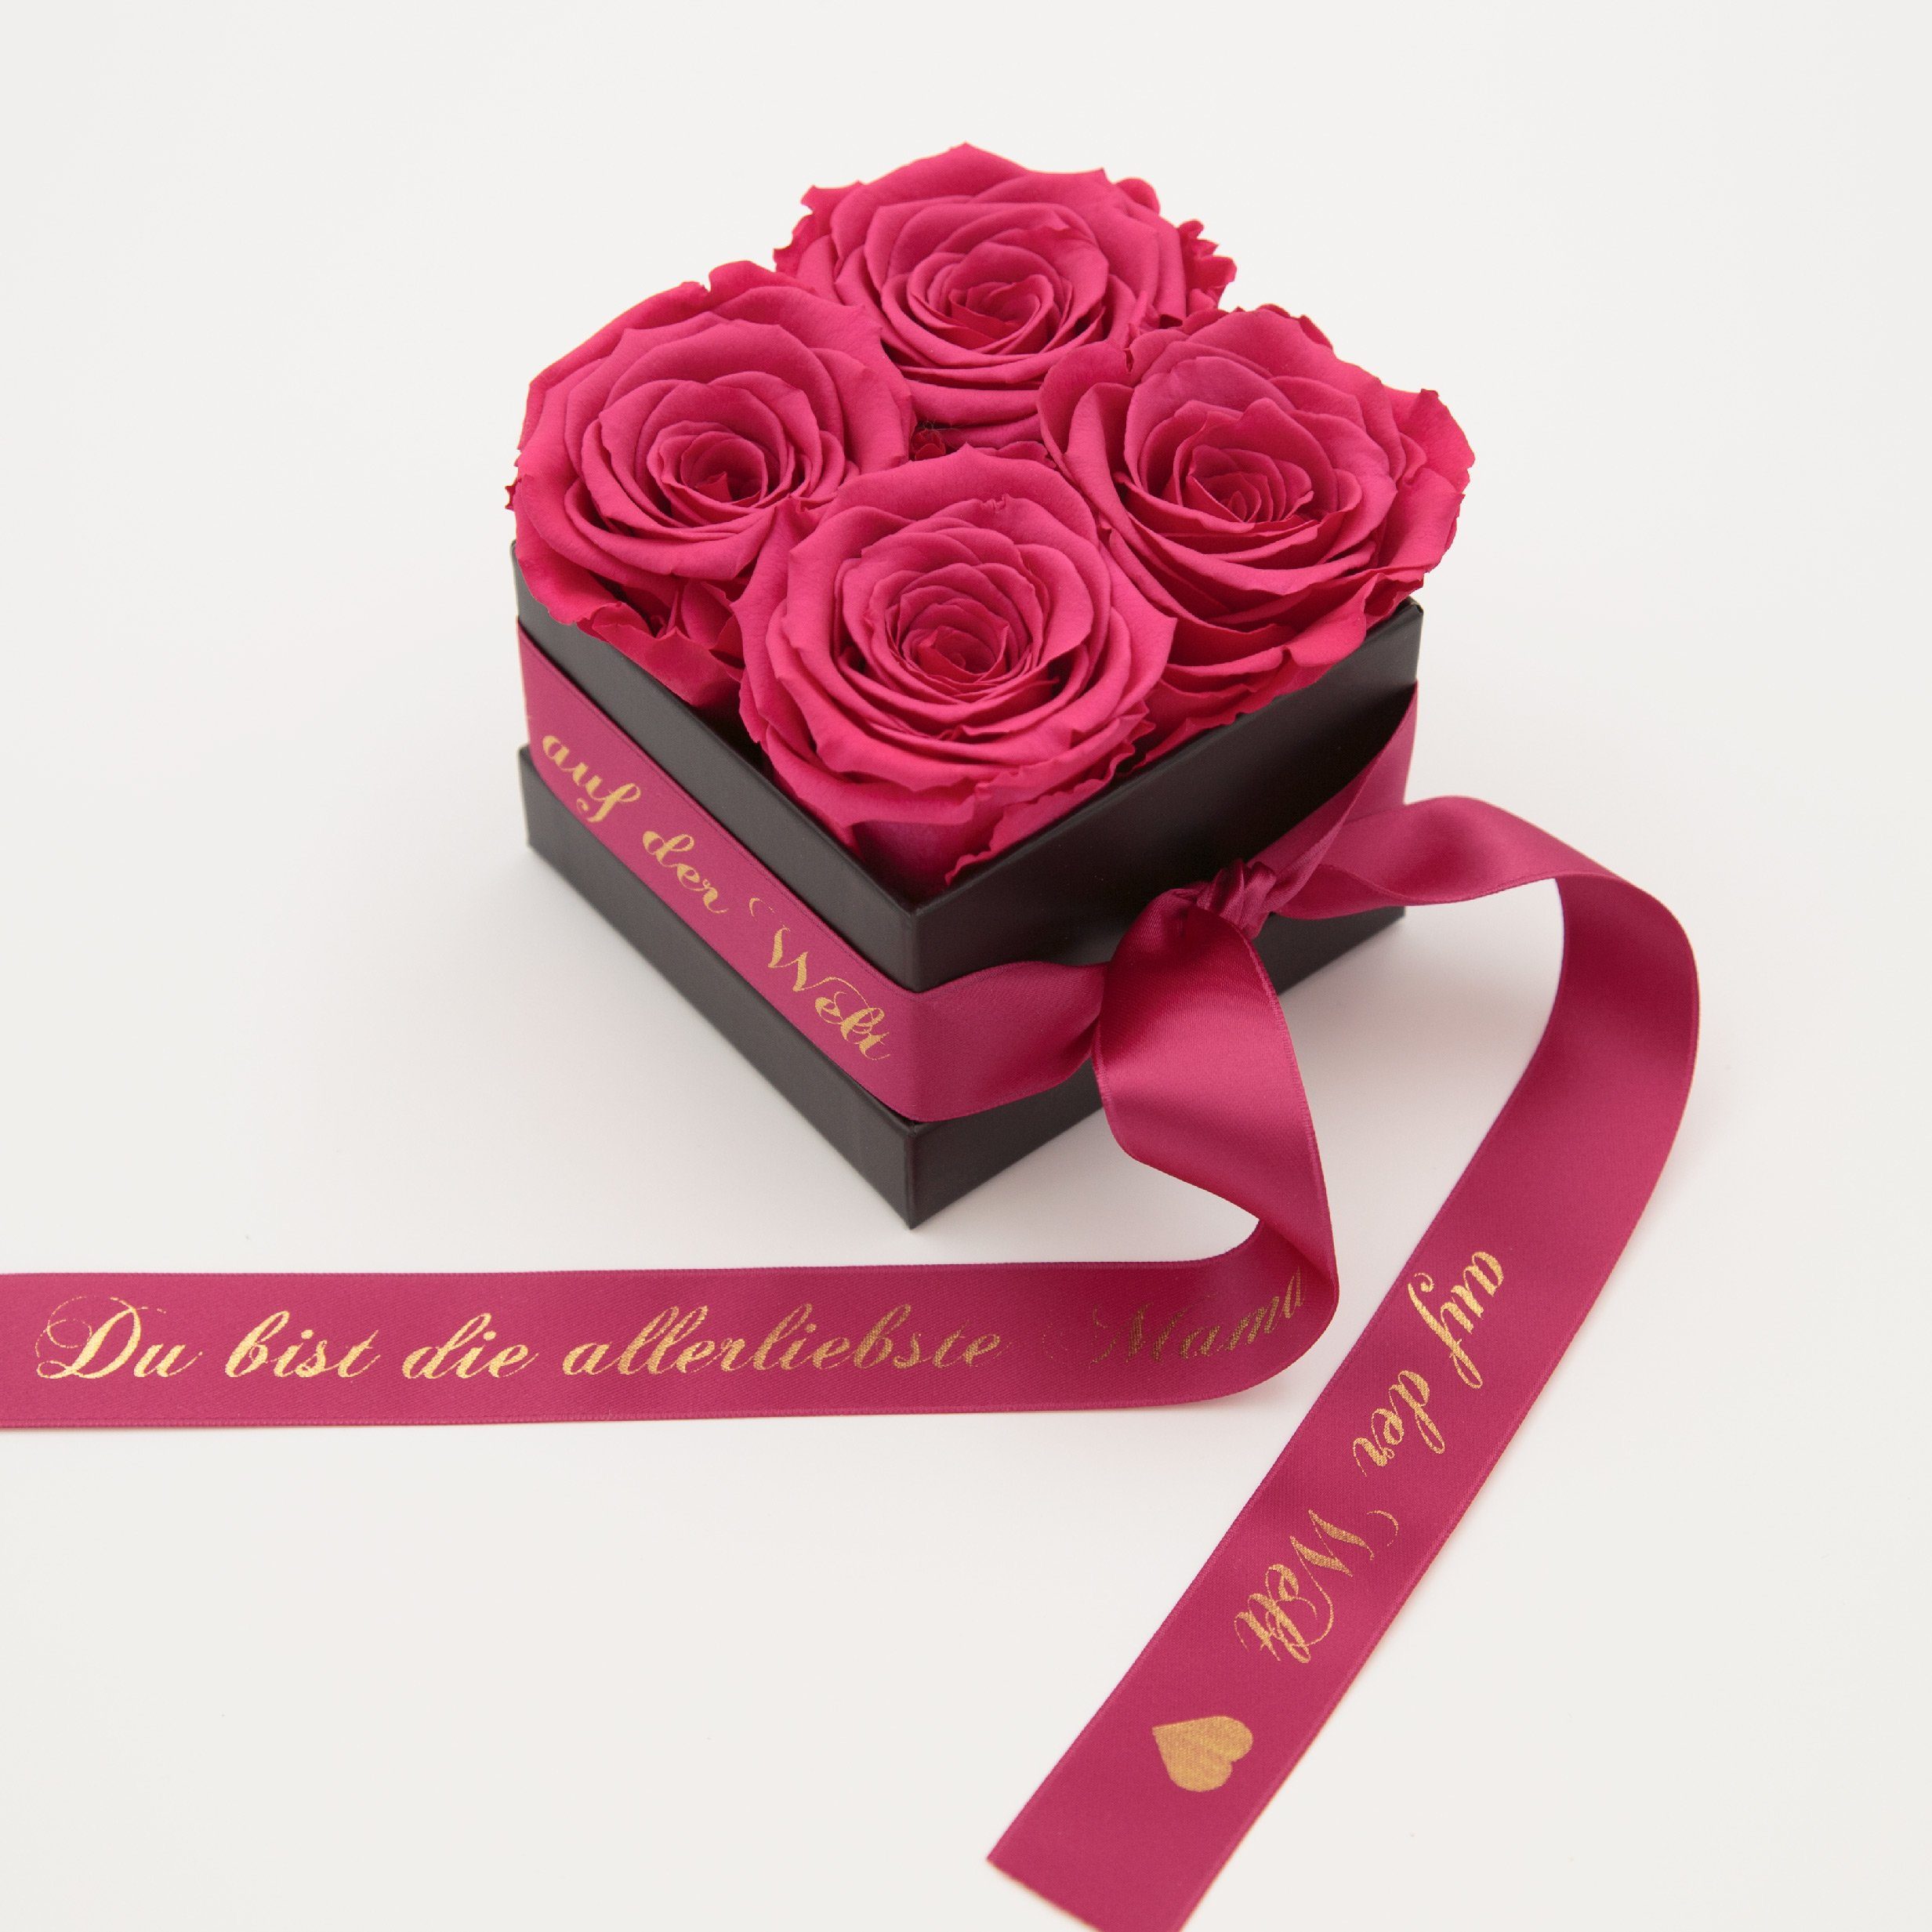 Kunstblume Allerliebste Geschenk cm, haltbar Rosenbox Rosen Echte Rosen ROSEMARIE auf SCHULZ Höhe der konservierte Mama 8,5 Pink 4 Rose, Heidelberg, 3 Welt Jahre